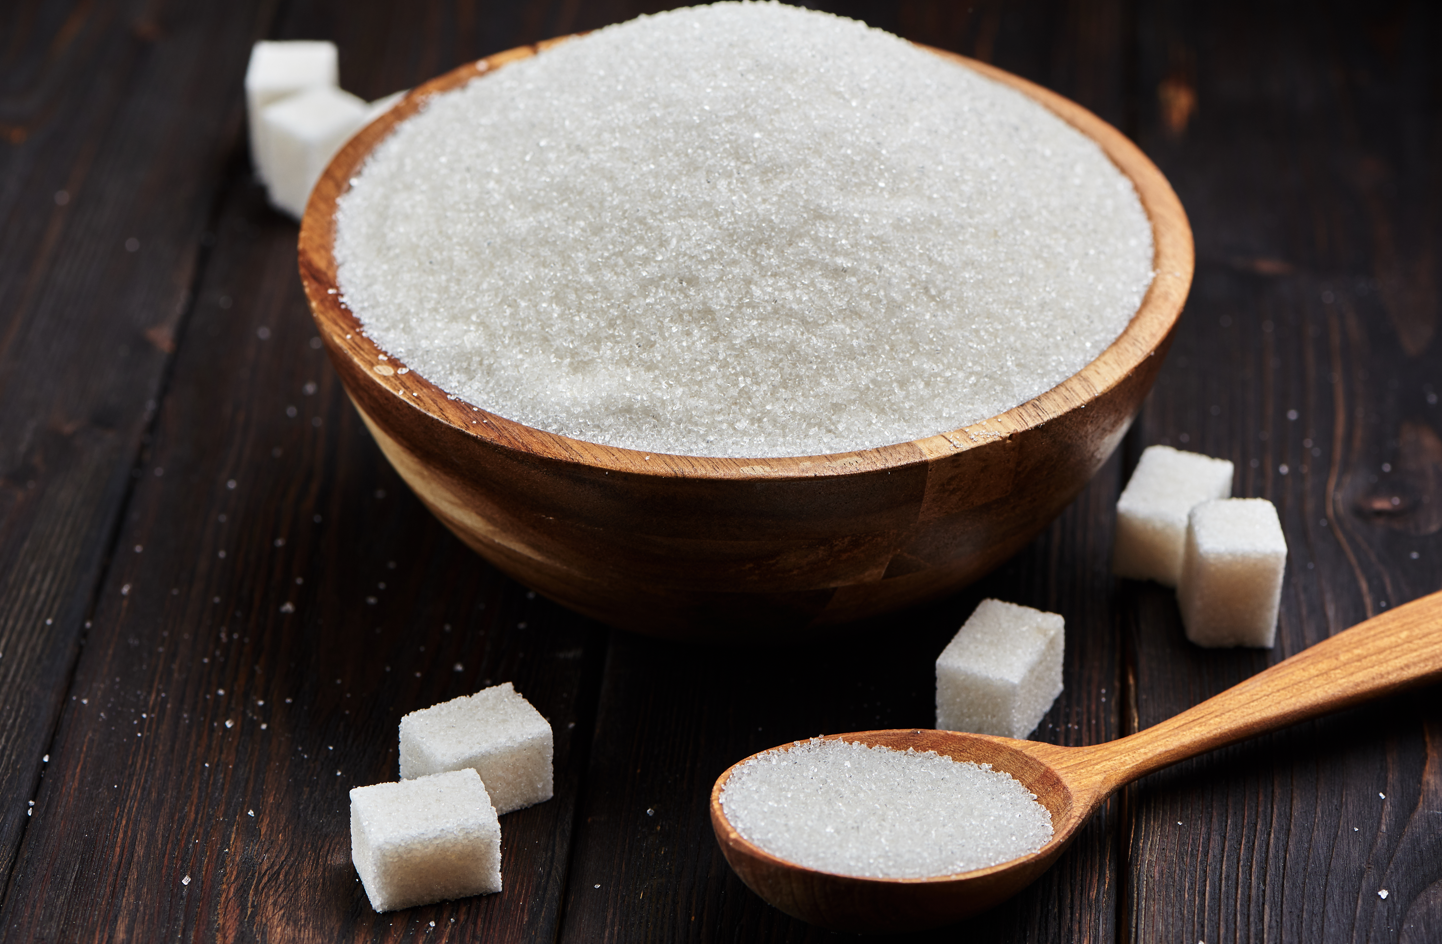 Këto janë gjashtë gënjeshtrat e mëdha për sheqerin që duhet t’i dimë me patjetër